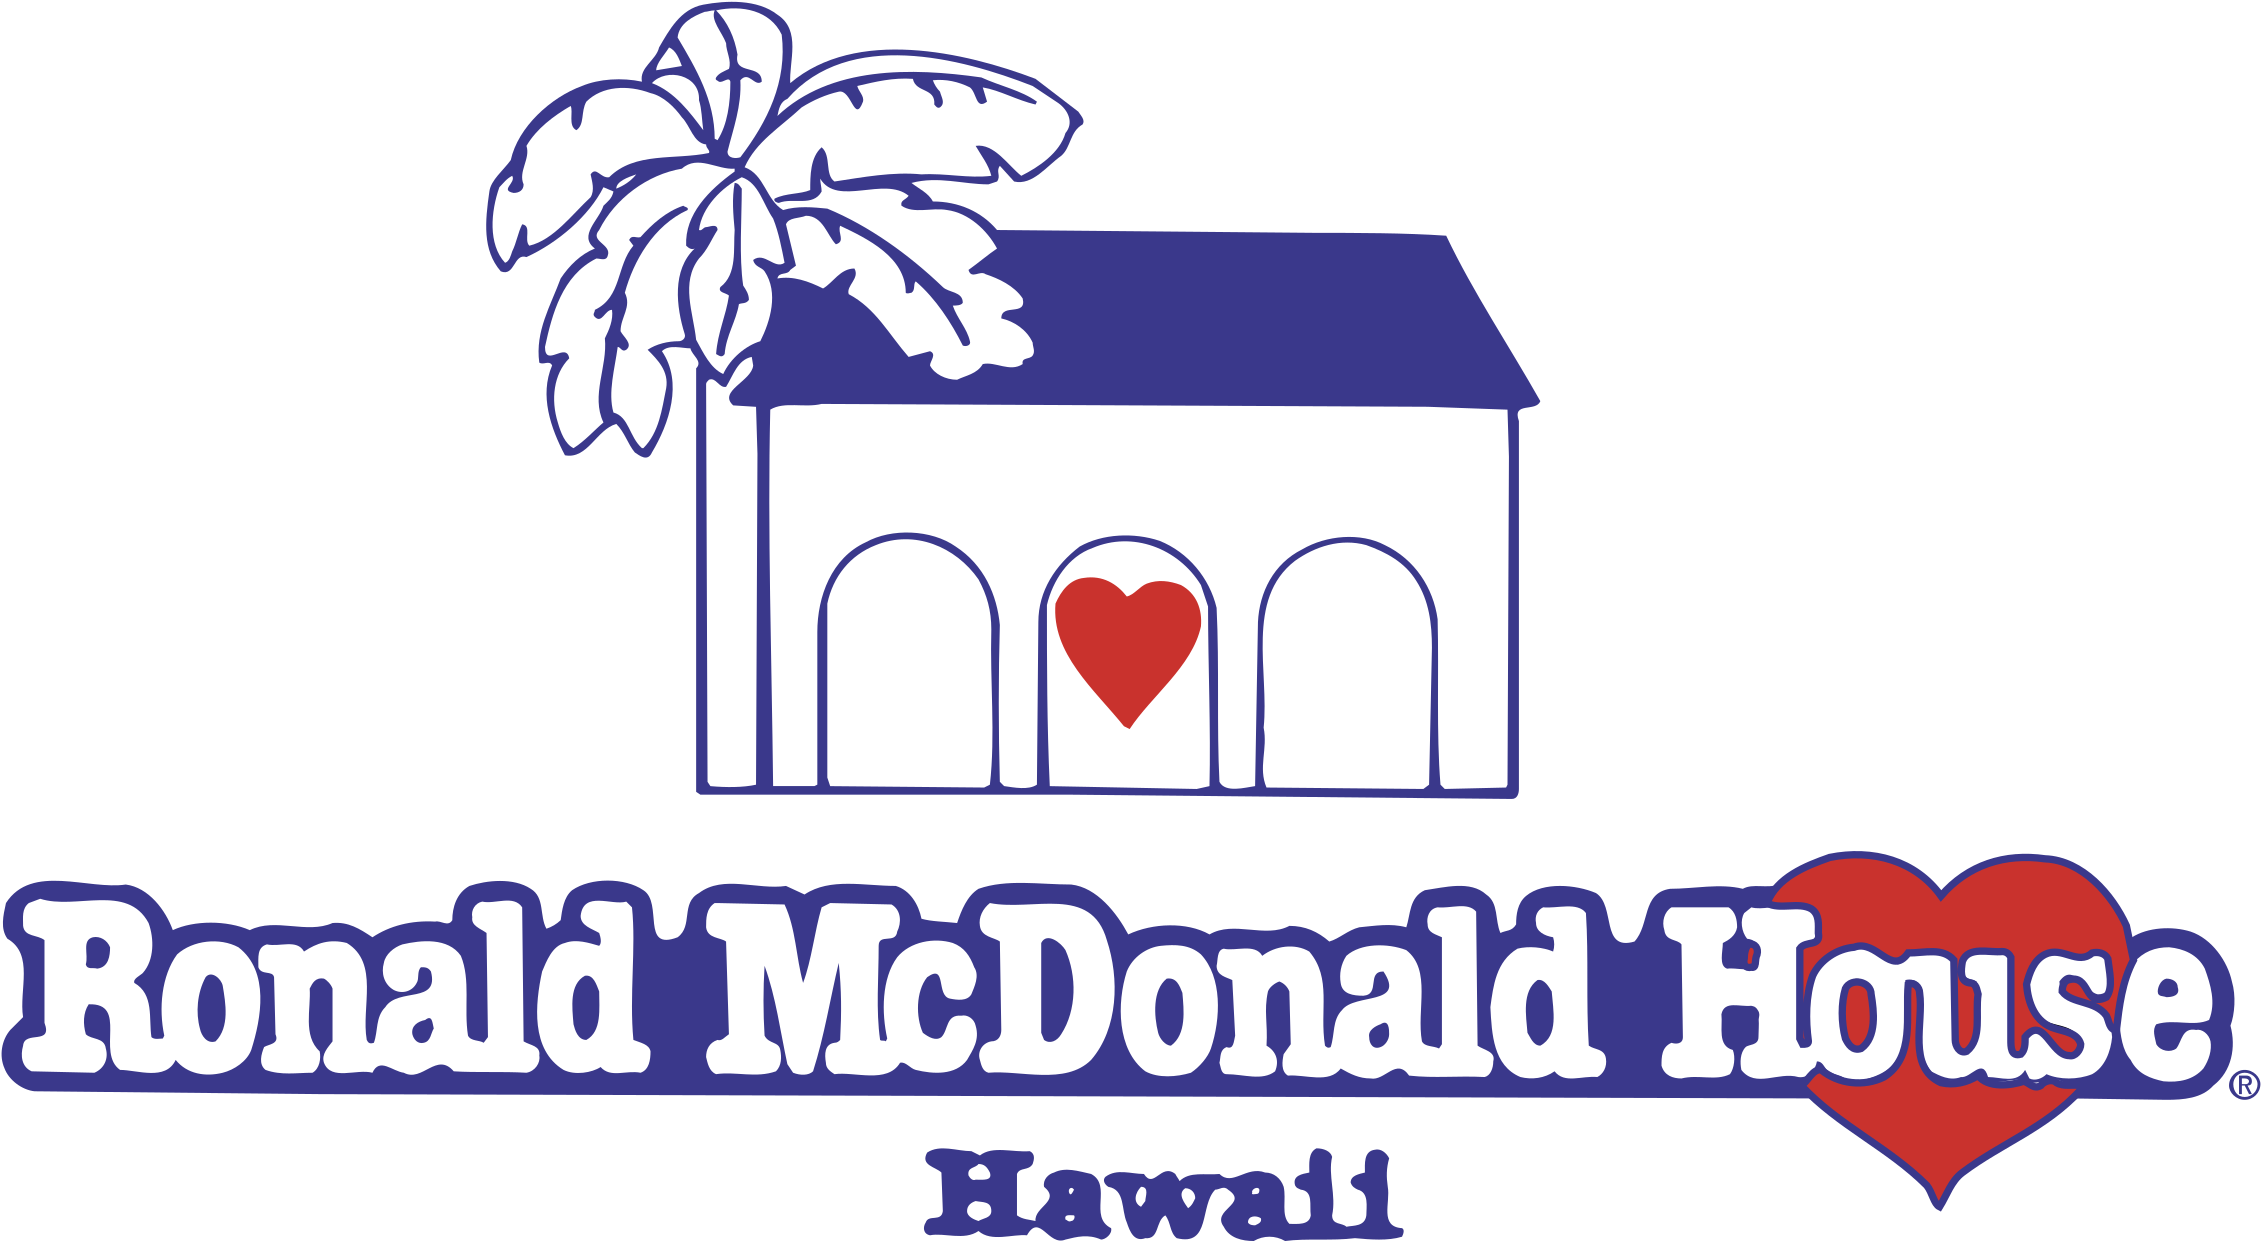 Ronald Mcdonald House Logo Png Transparent - Ronald Mcdonald House (2400x2400), Png Download